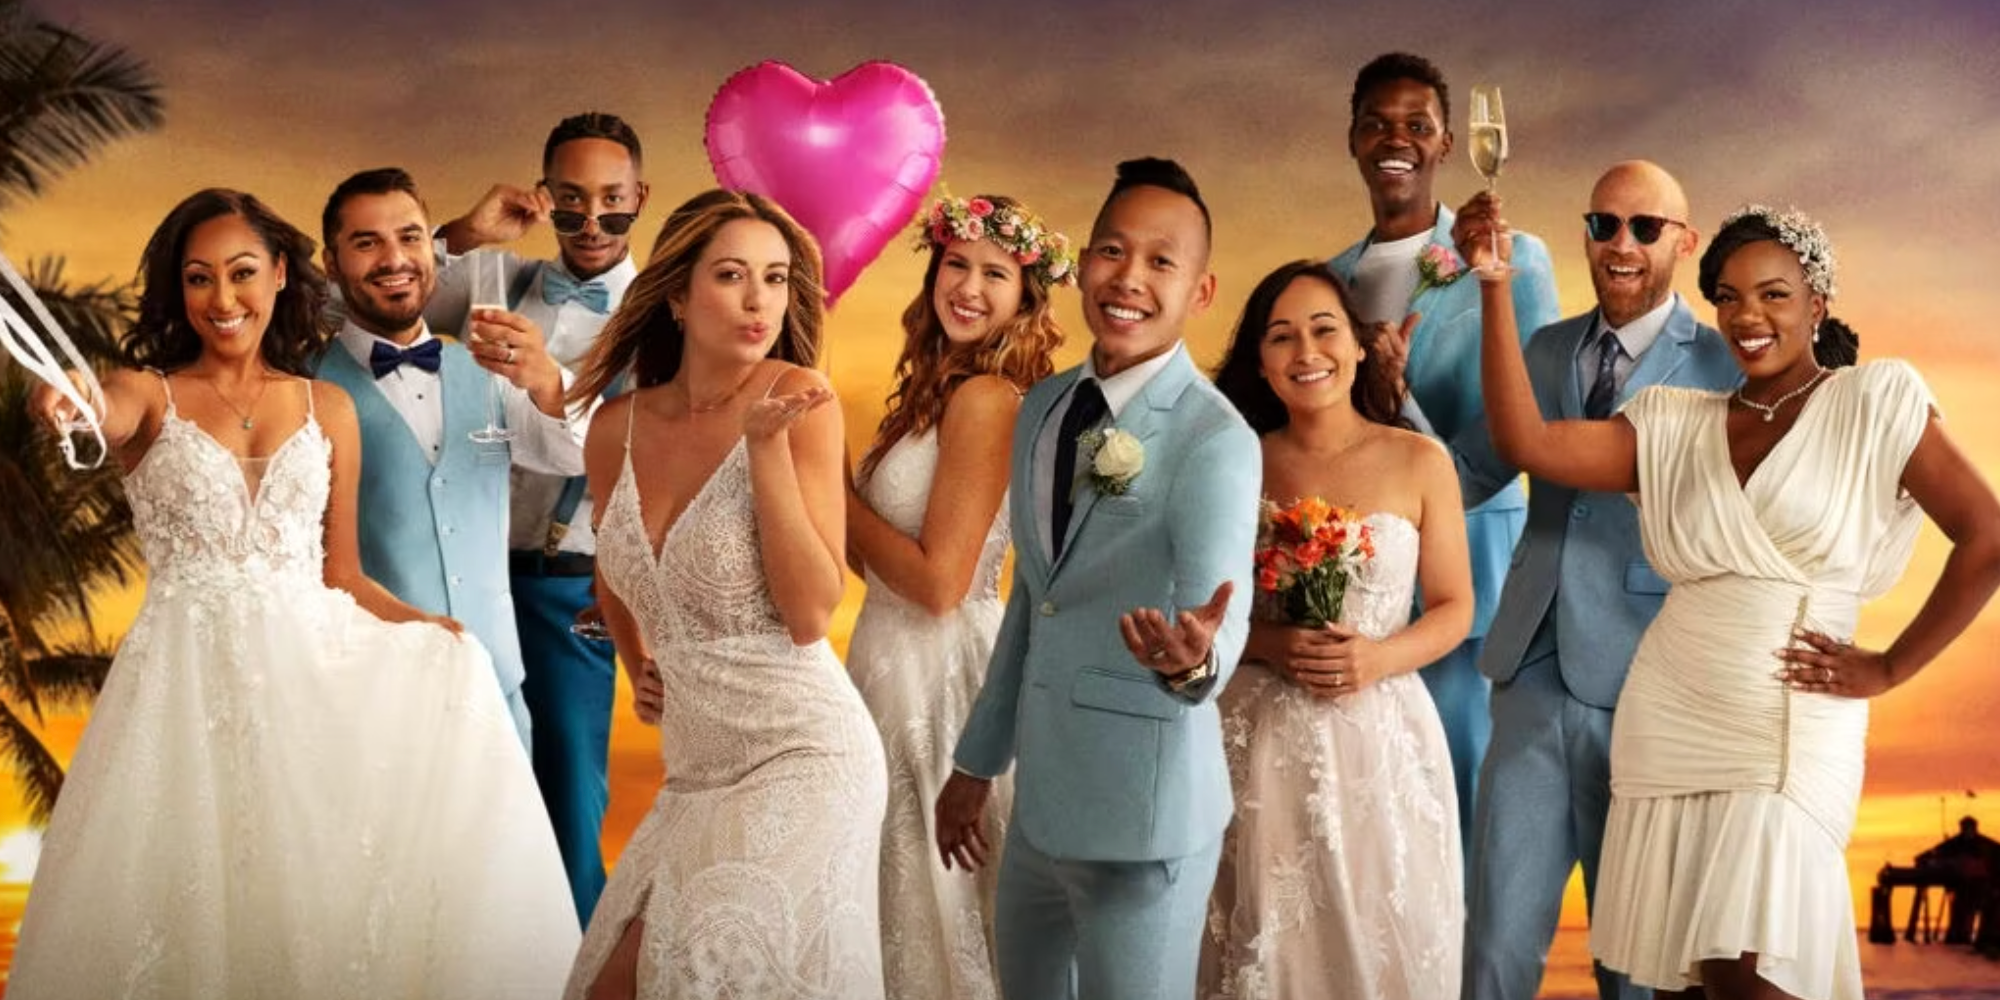 Casado a primera vista, el elenco de la temporada 15, todos vestidos y posando para una foto promocional.